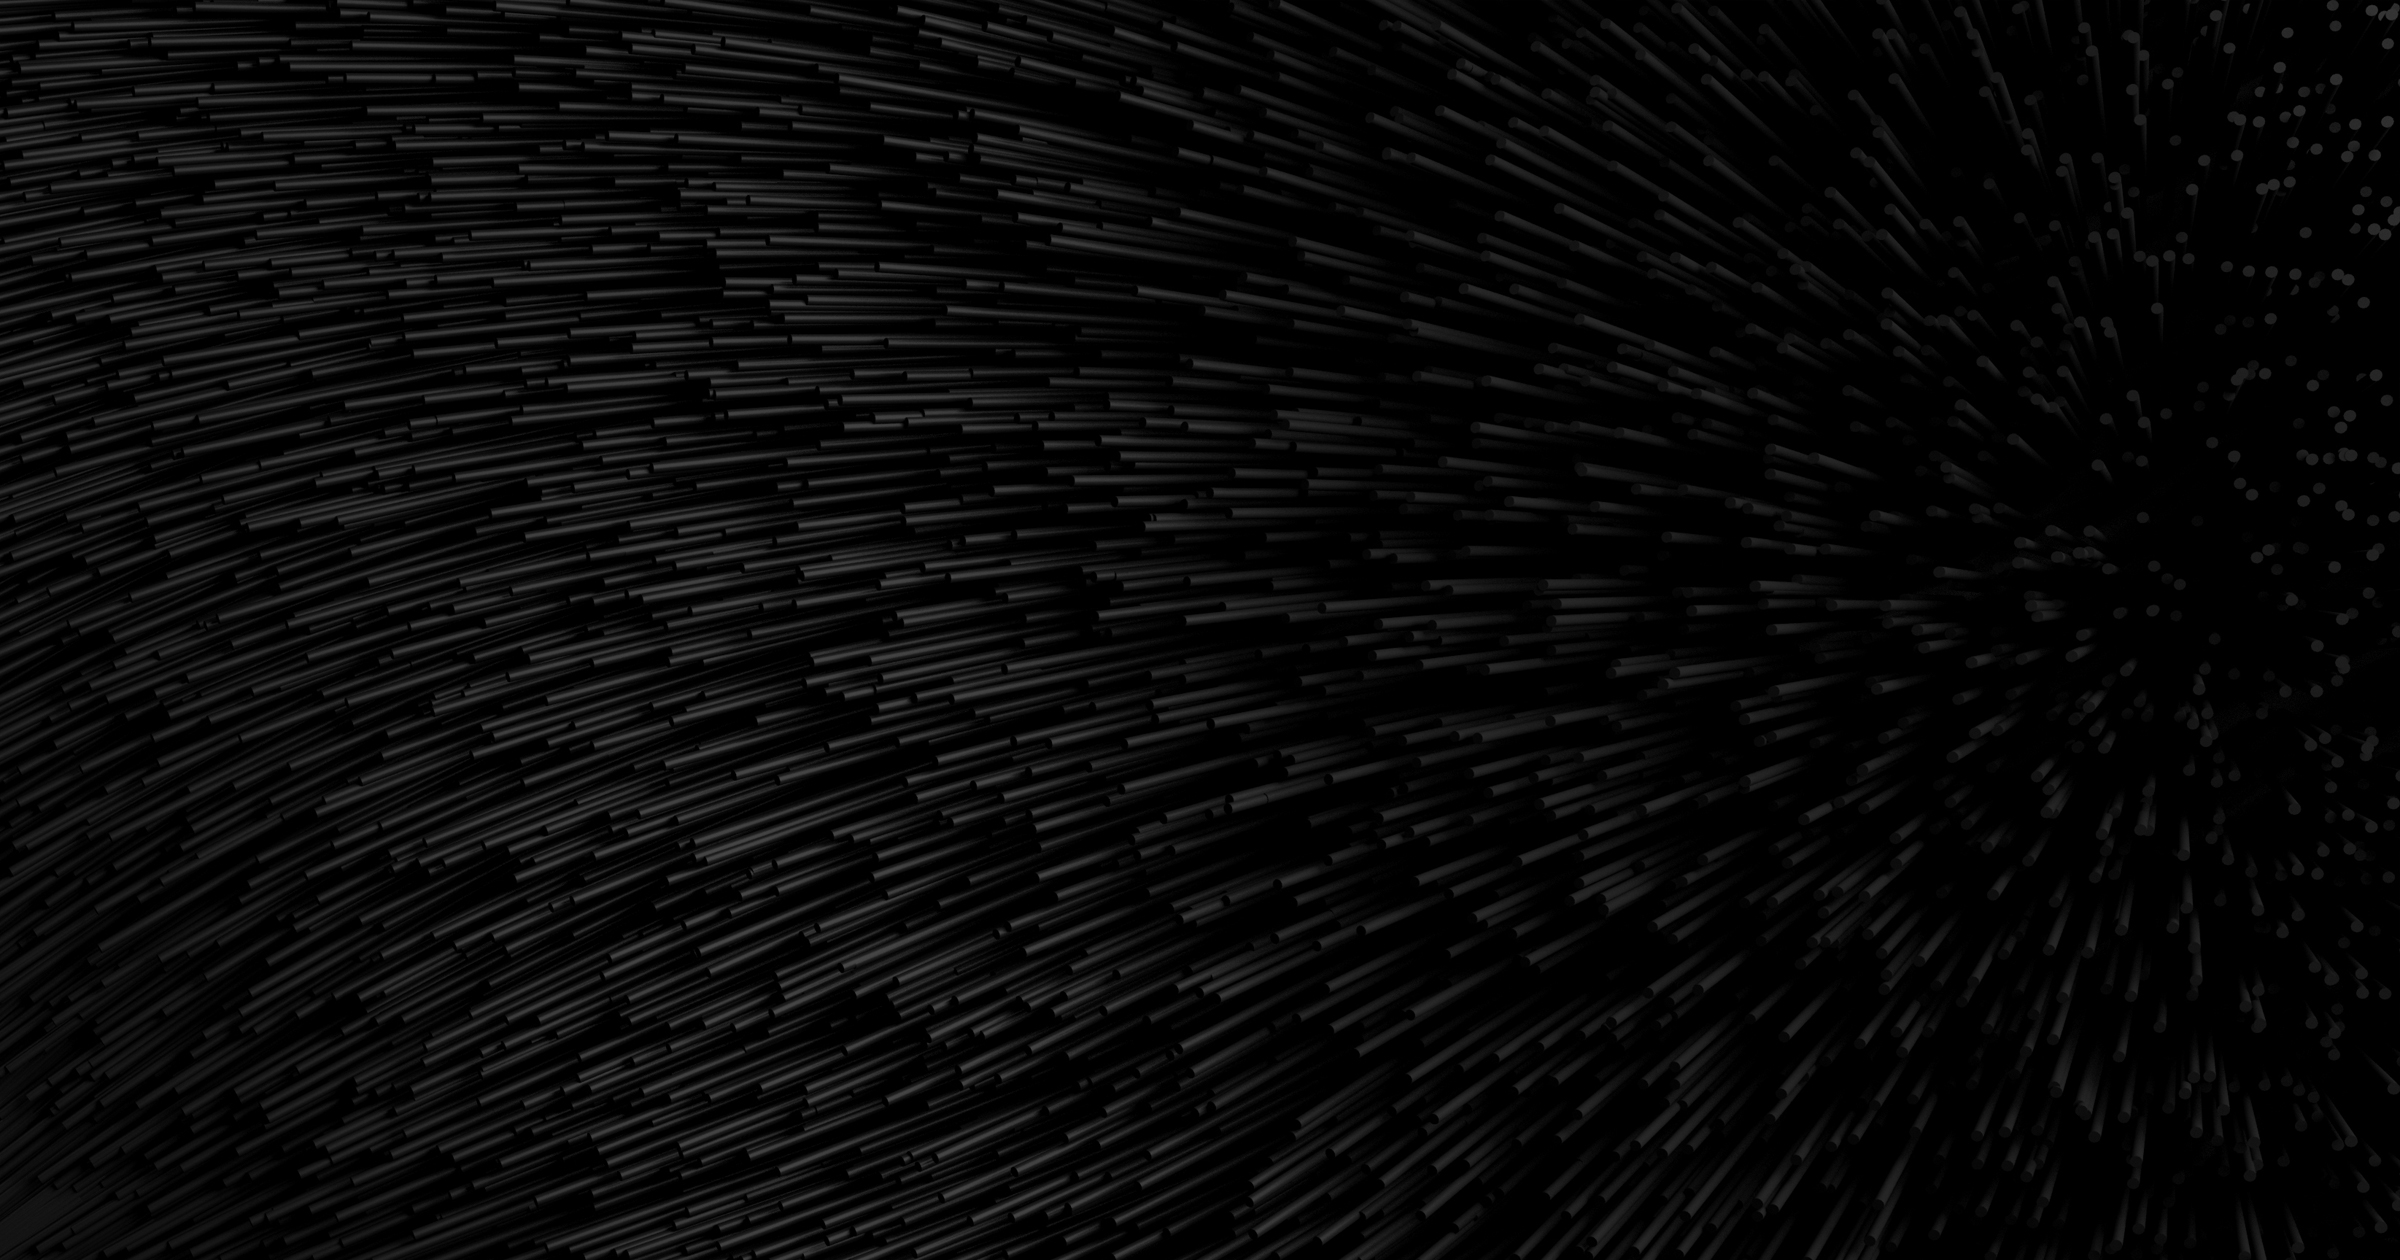 Hình nền đen miễn phí: Một bộ sưu tập những hình nền đen độc đáo và miễn phí dành cho bạn. Với những hình ảnh đậm chất cá tính, sự đơn giản mà vẫn đầy đủ sức hút, chắc chắn sẽ mang đến cho màn hình của bạn một diện mạo hoàn toàn khác biệt.